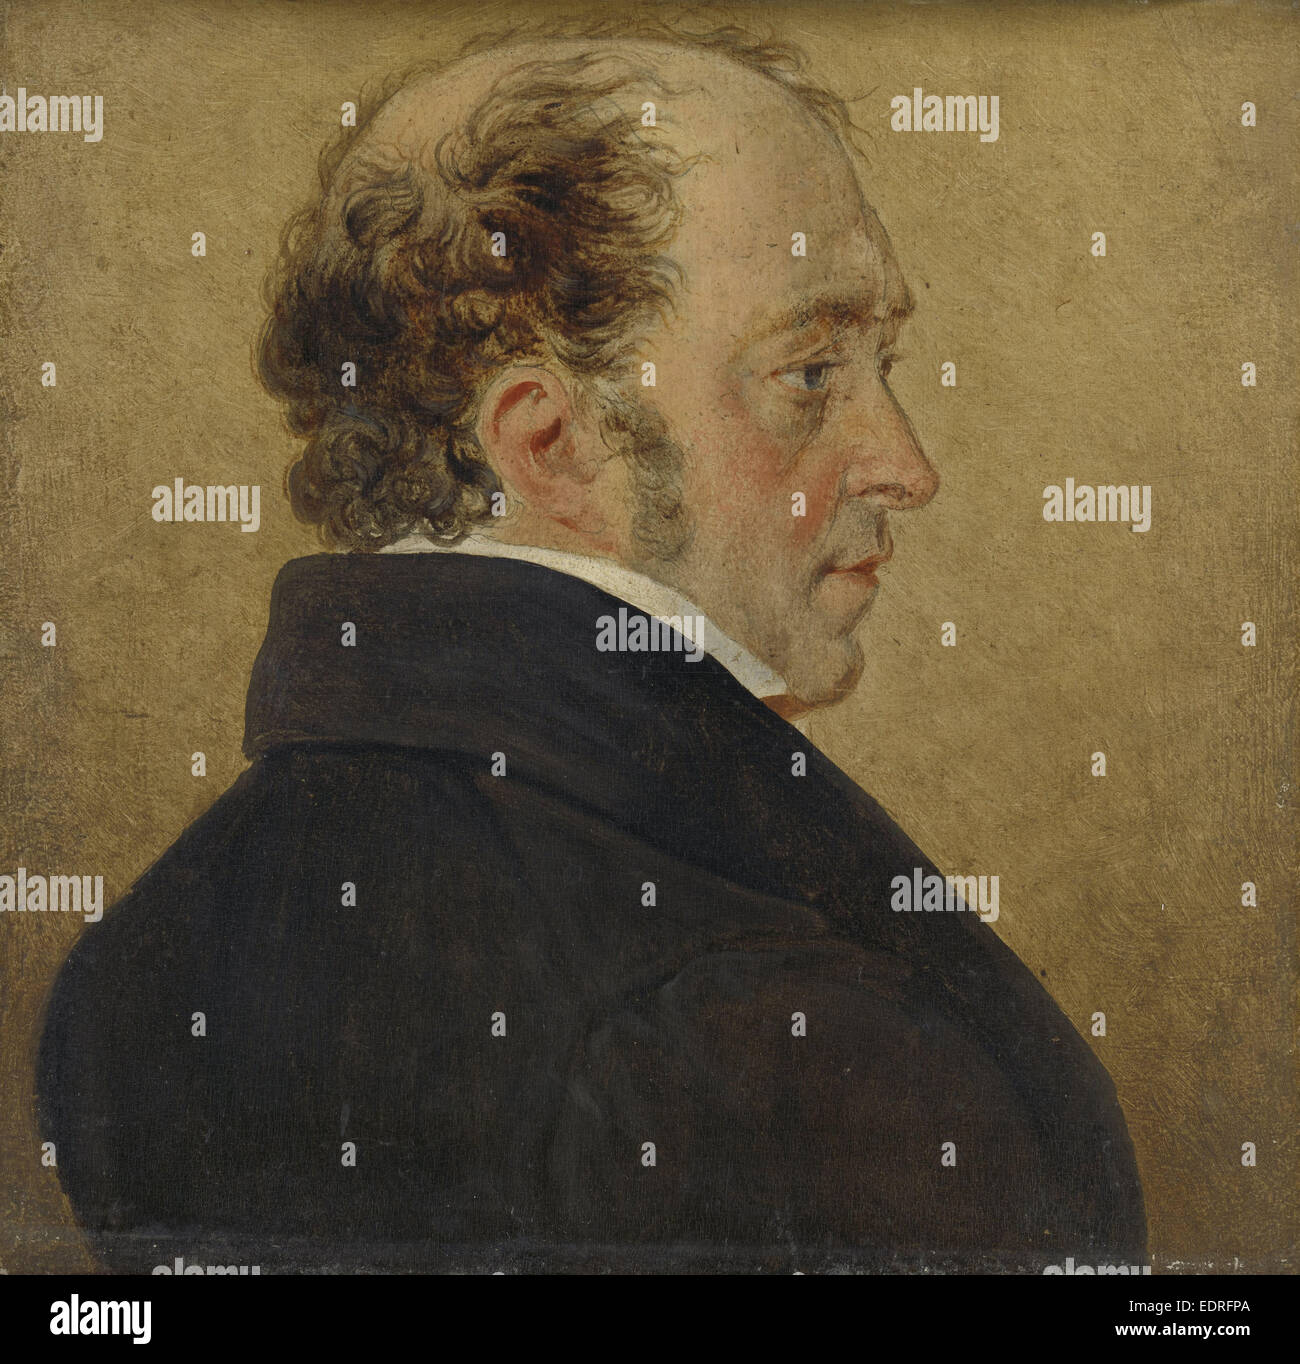 Self-Portrait, Mattheus Ignatius van Bree, c. 1800 - c. 1839 Stock Photo